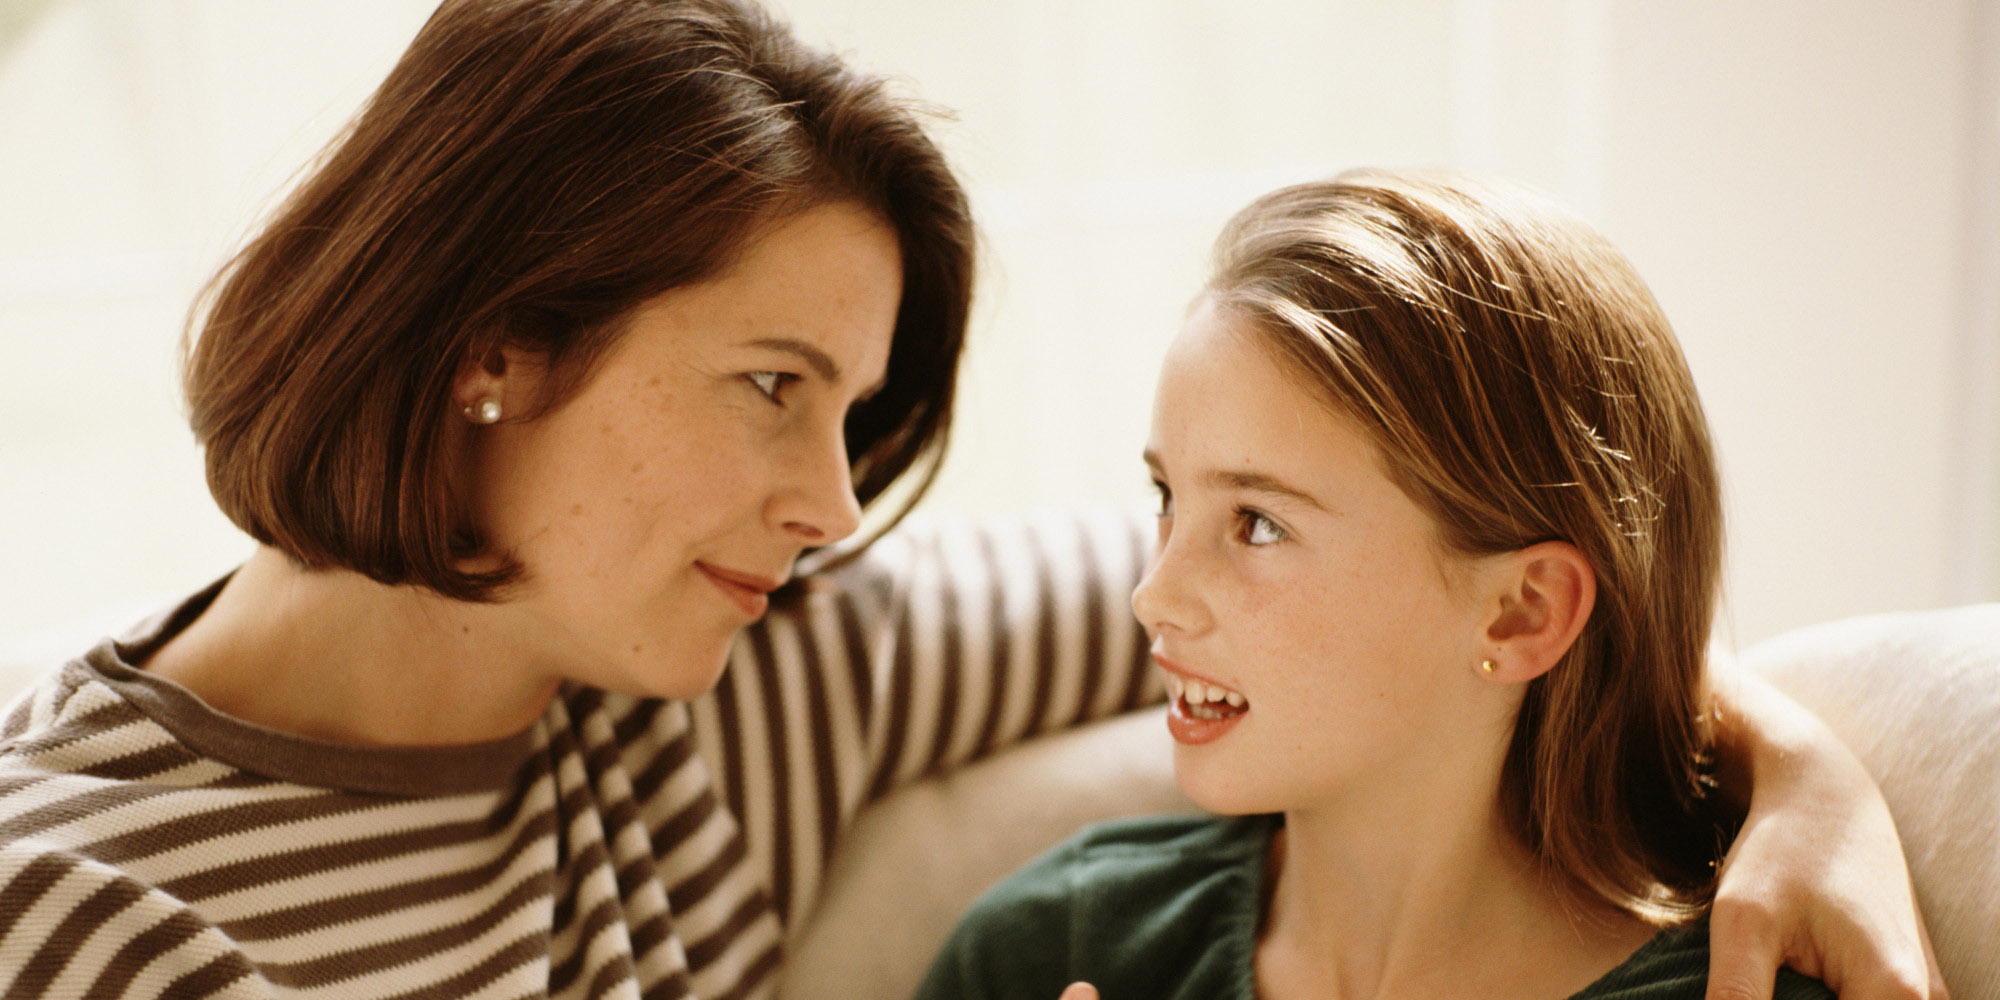   Cha mẹ đôi khi thiếu sự lắng nghe dẫn đến việc con không thích nói chuyện  